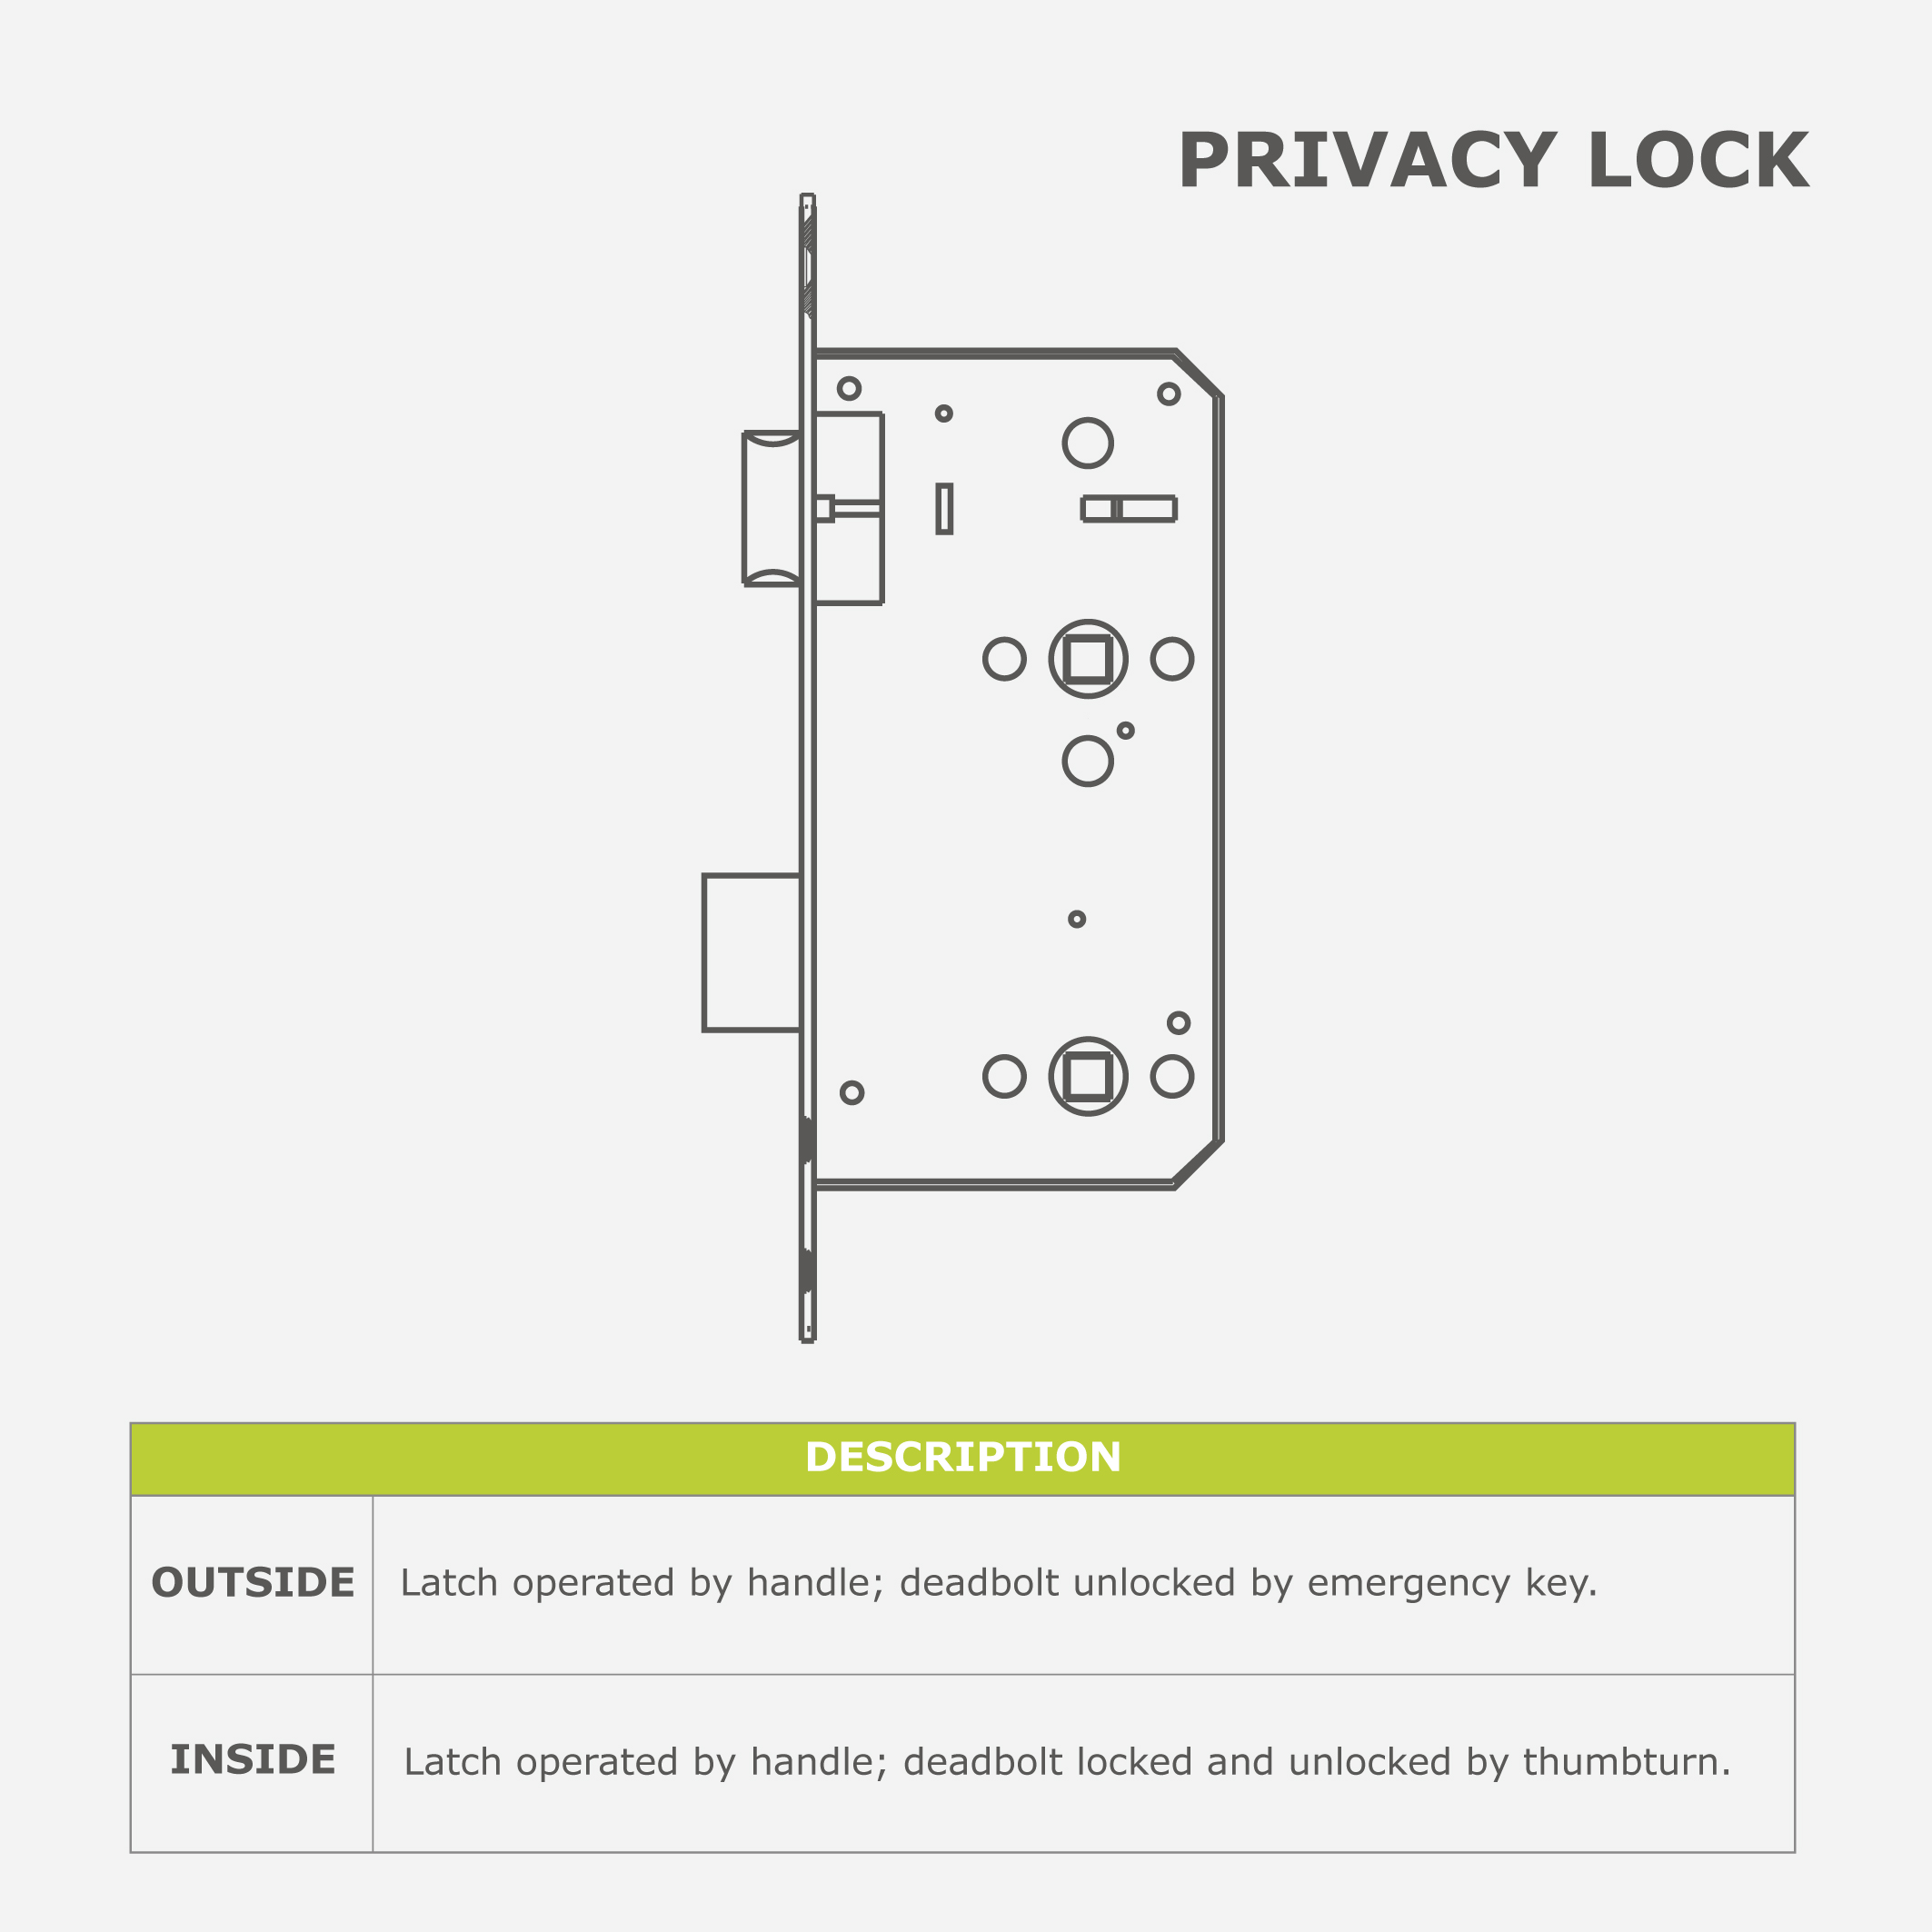 PRIVACY LOCK